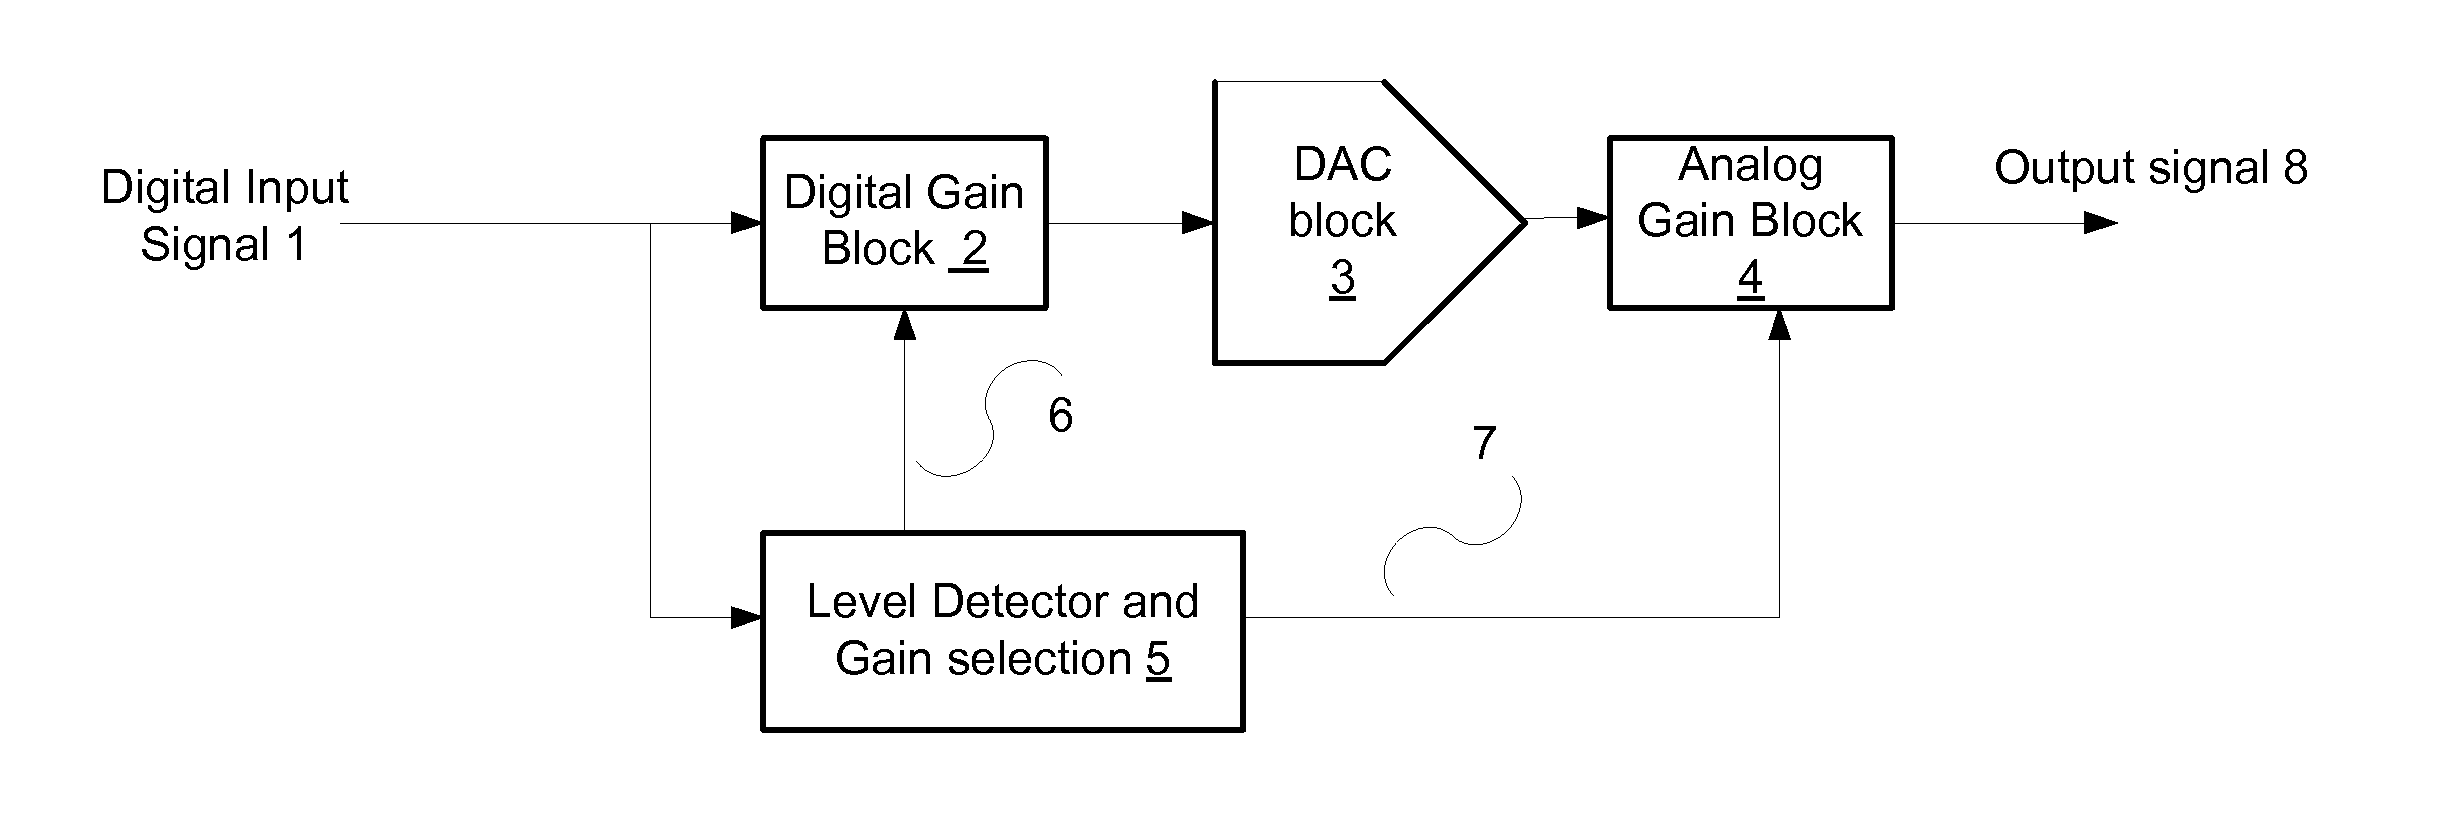 Dynamic gain switching digital to analog converter